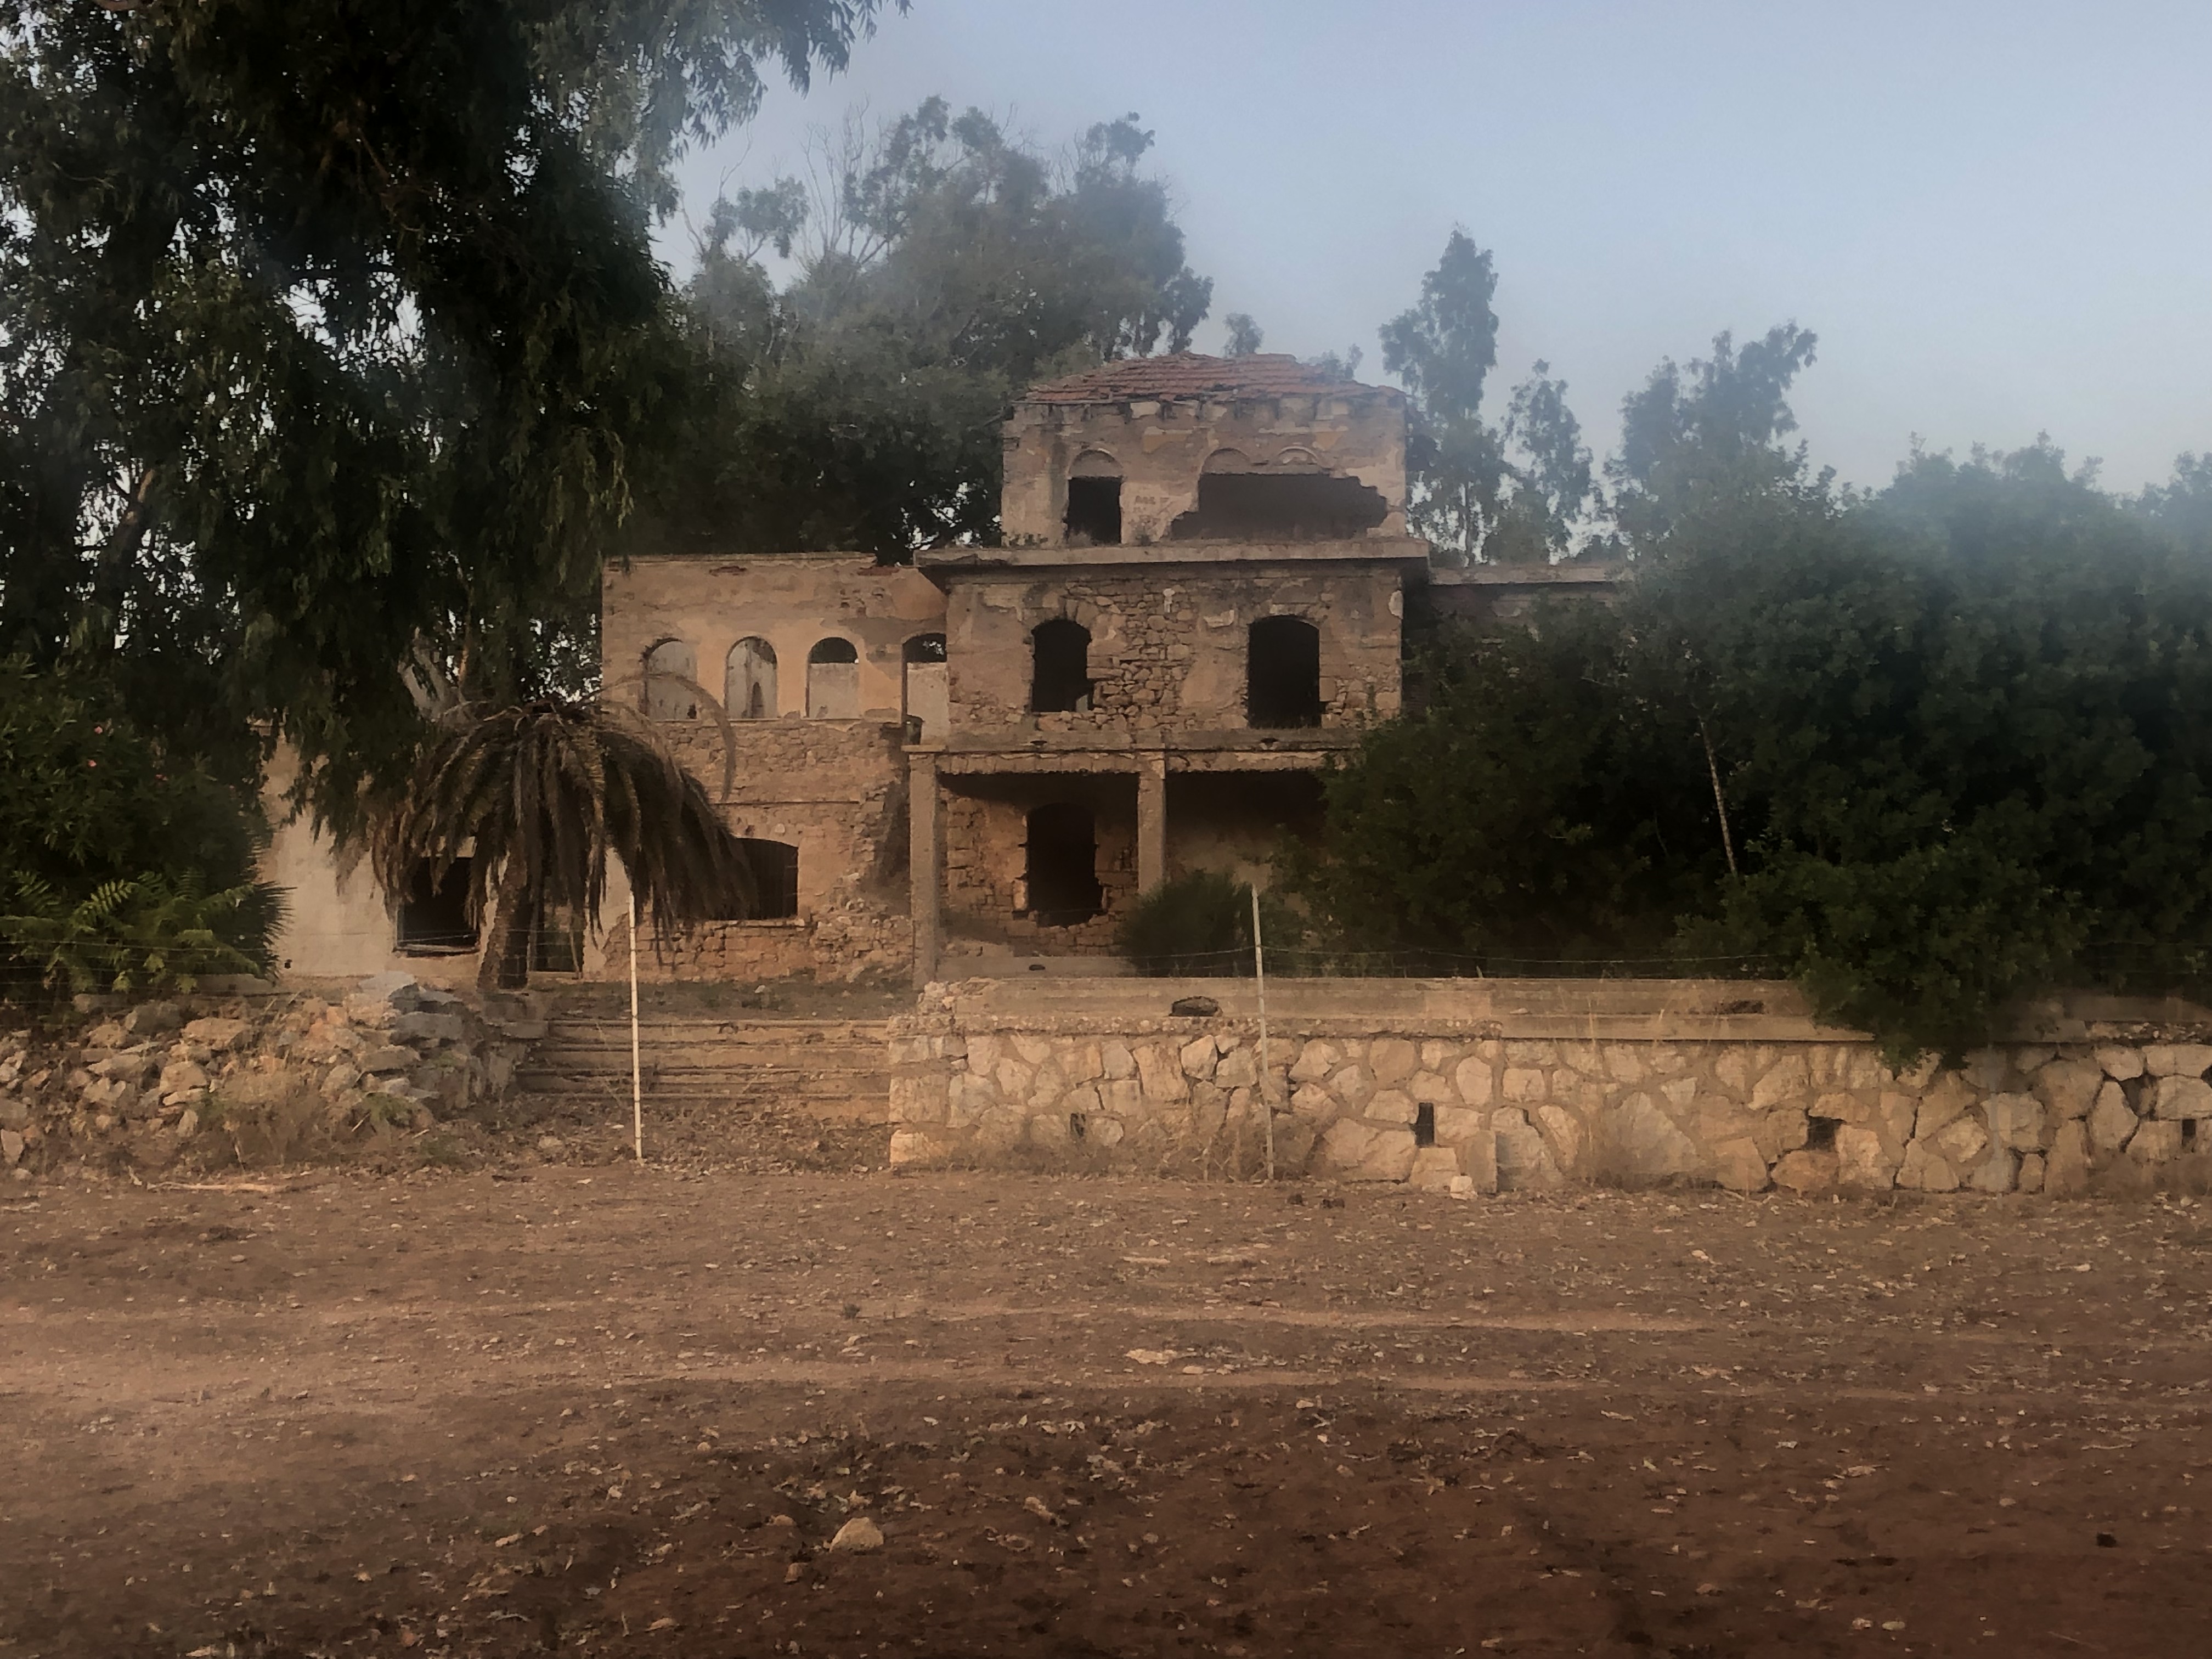 Villa Mugoni (villa, privata) - Alghero (SS) 